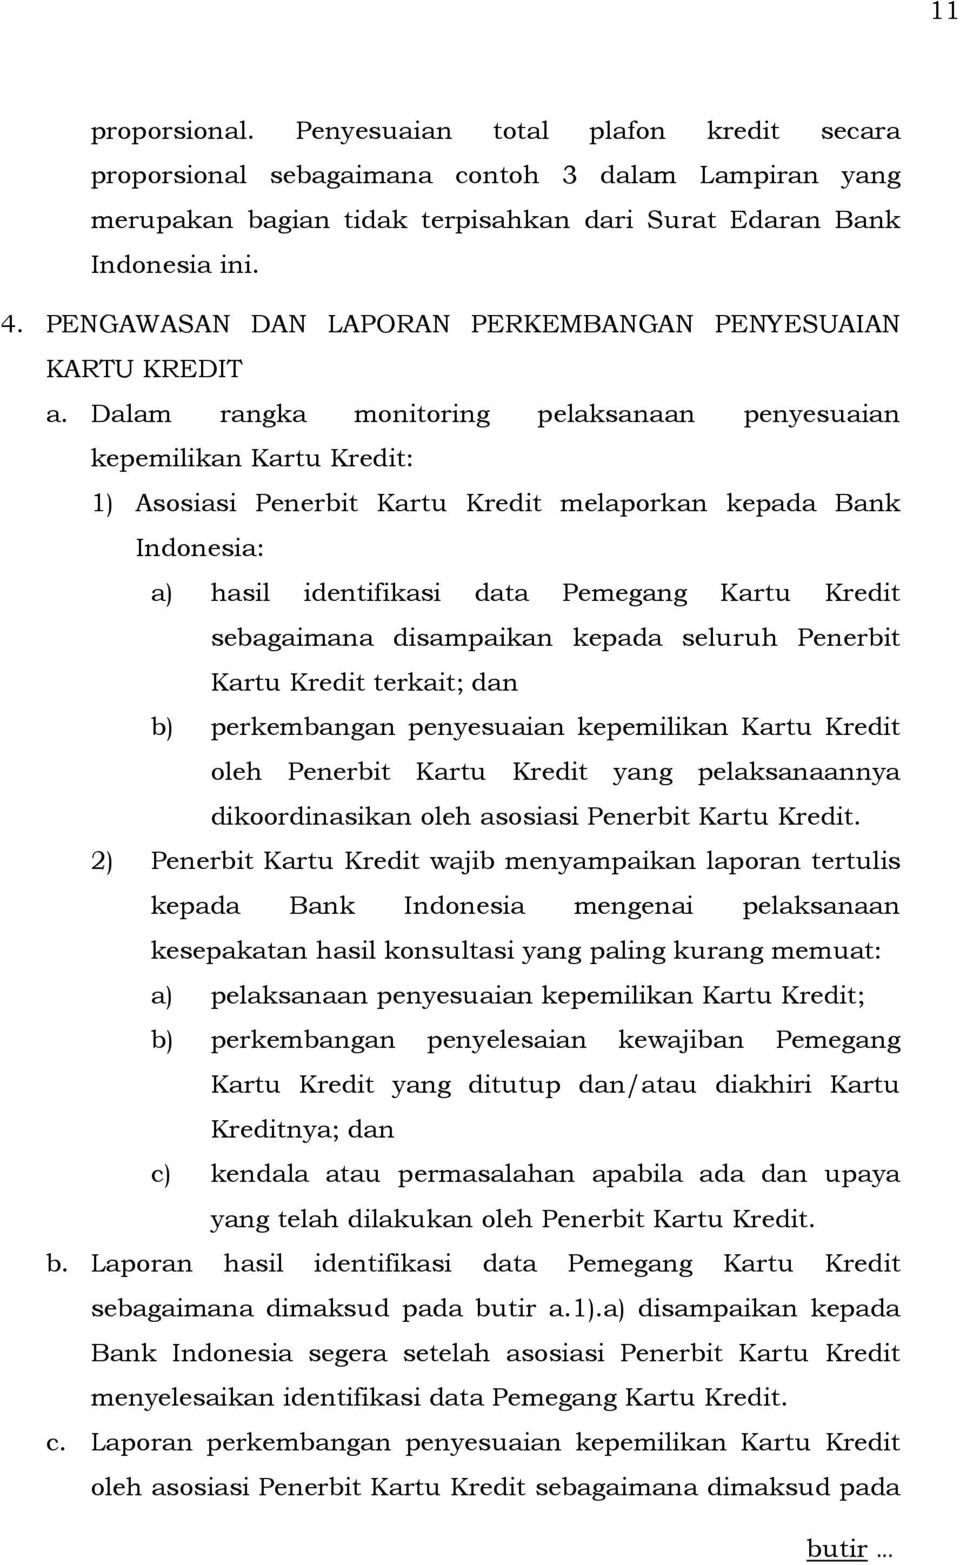 Dalam rangka monitoring pelaksanaan penyesuaian kepemilikan Kartu Kredit: 1) Asosiasi Penerbit Kartu Kredit melaporkan kepada Bank Indonesia: a) hasil identifikasi data Pemegang Kartu Kredit